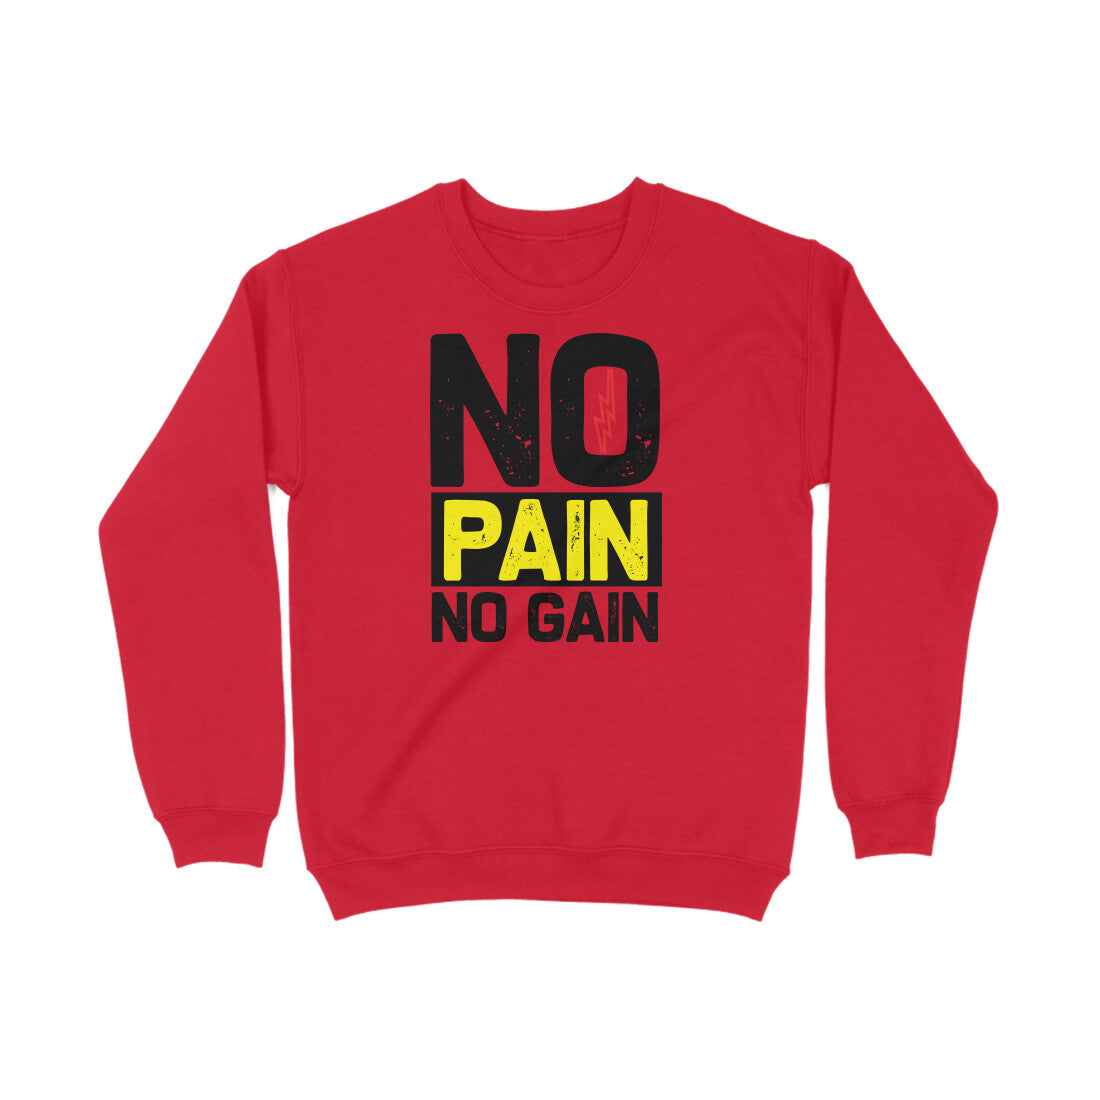 TNH - Sweat Shirt - No Pain No gain